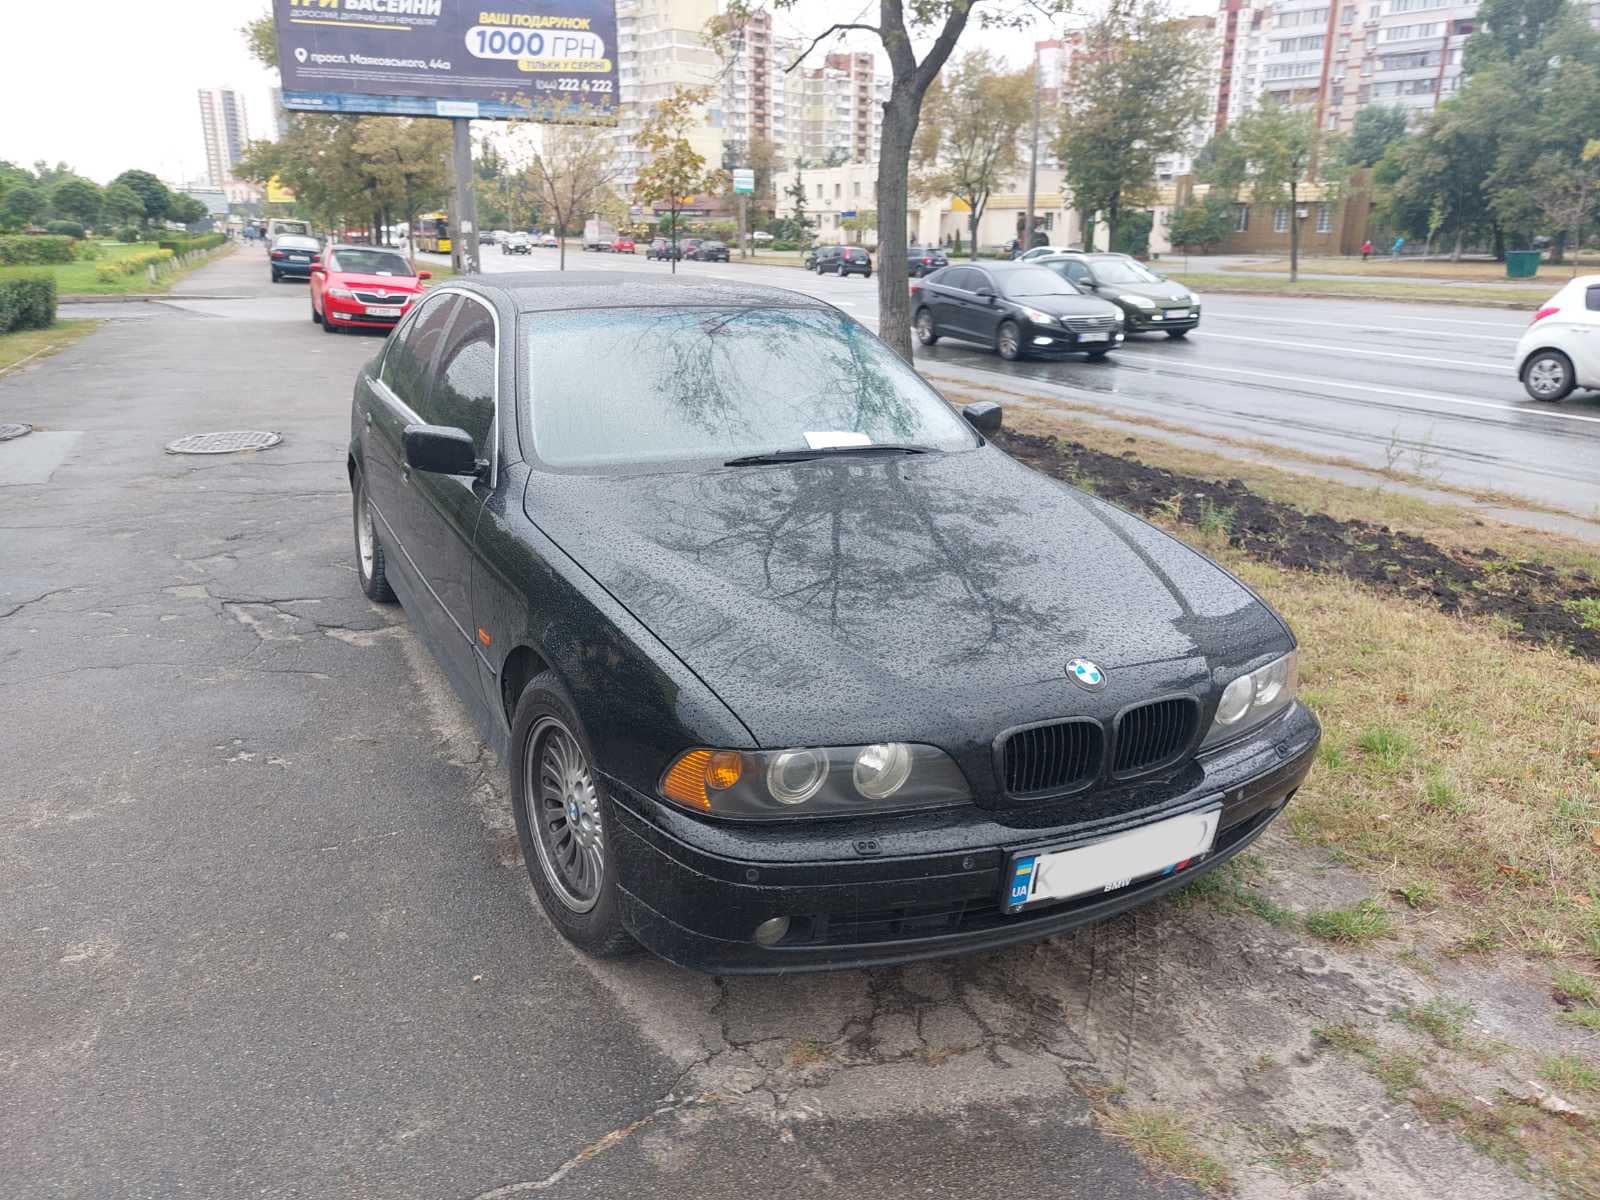 Київзеленбуд почав фіксувати паркування на газонах для адмінкомісії КМДА